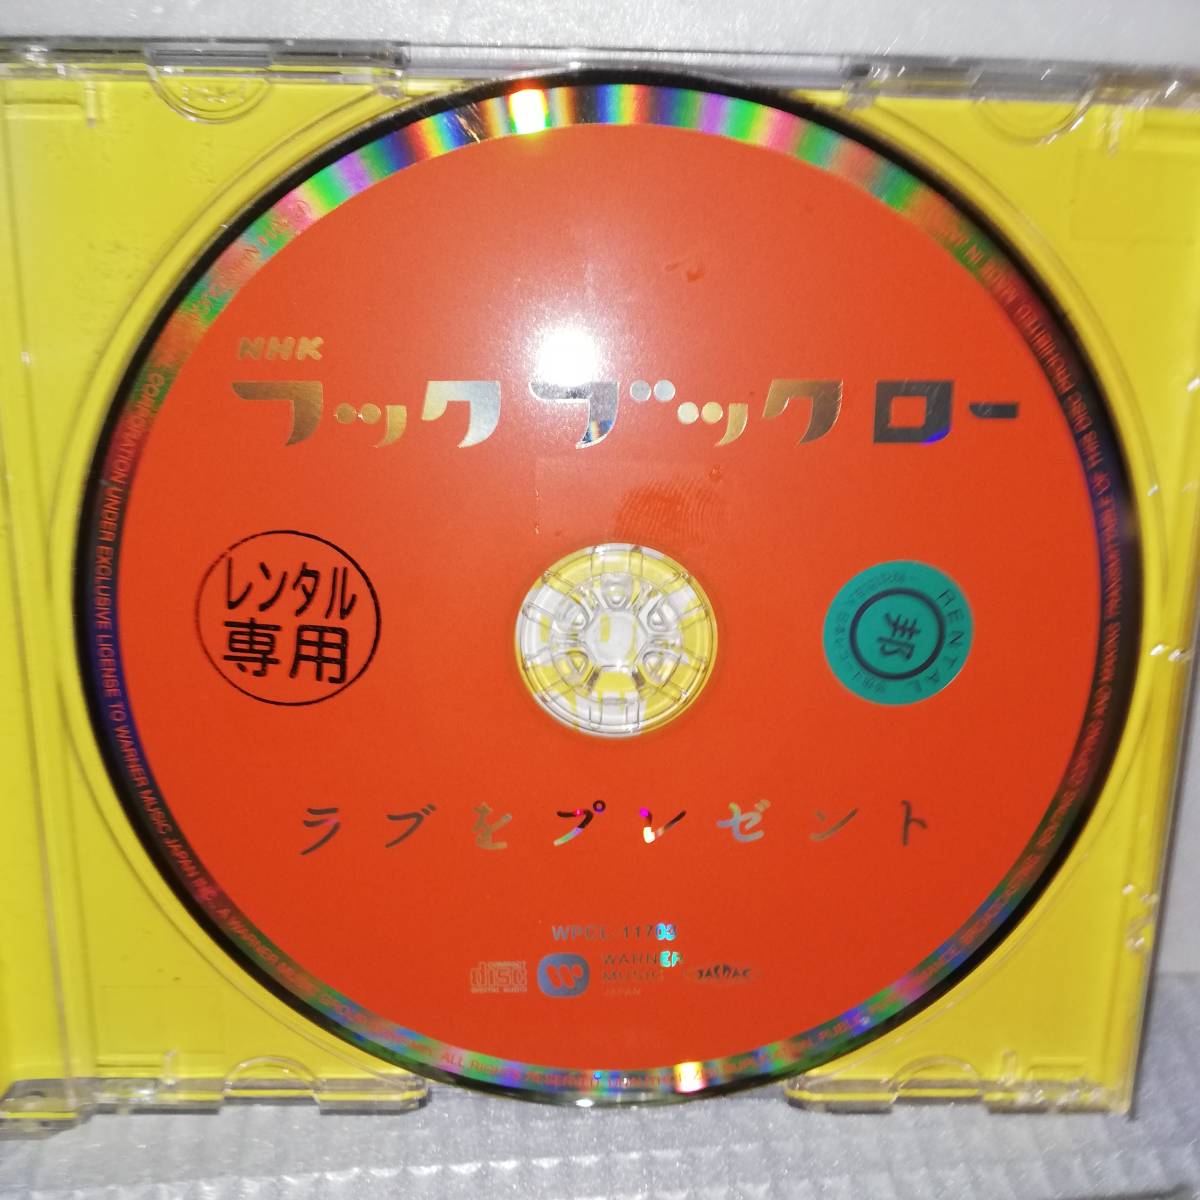 *NHK крюк b гусеничный ход b. подарок /. сделал изначальный .....*CD диск итого 2 листов * прокат * бесплатная доставка 